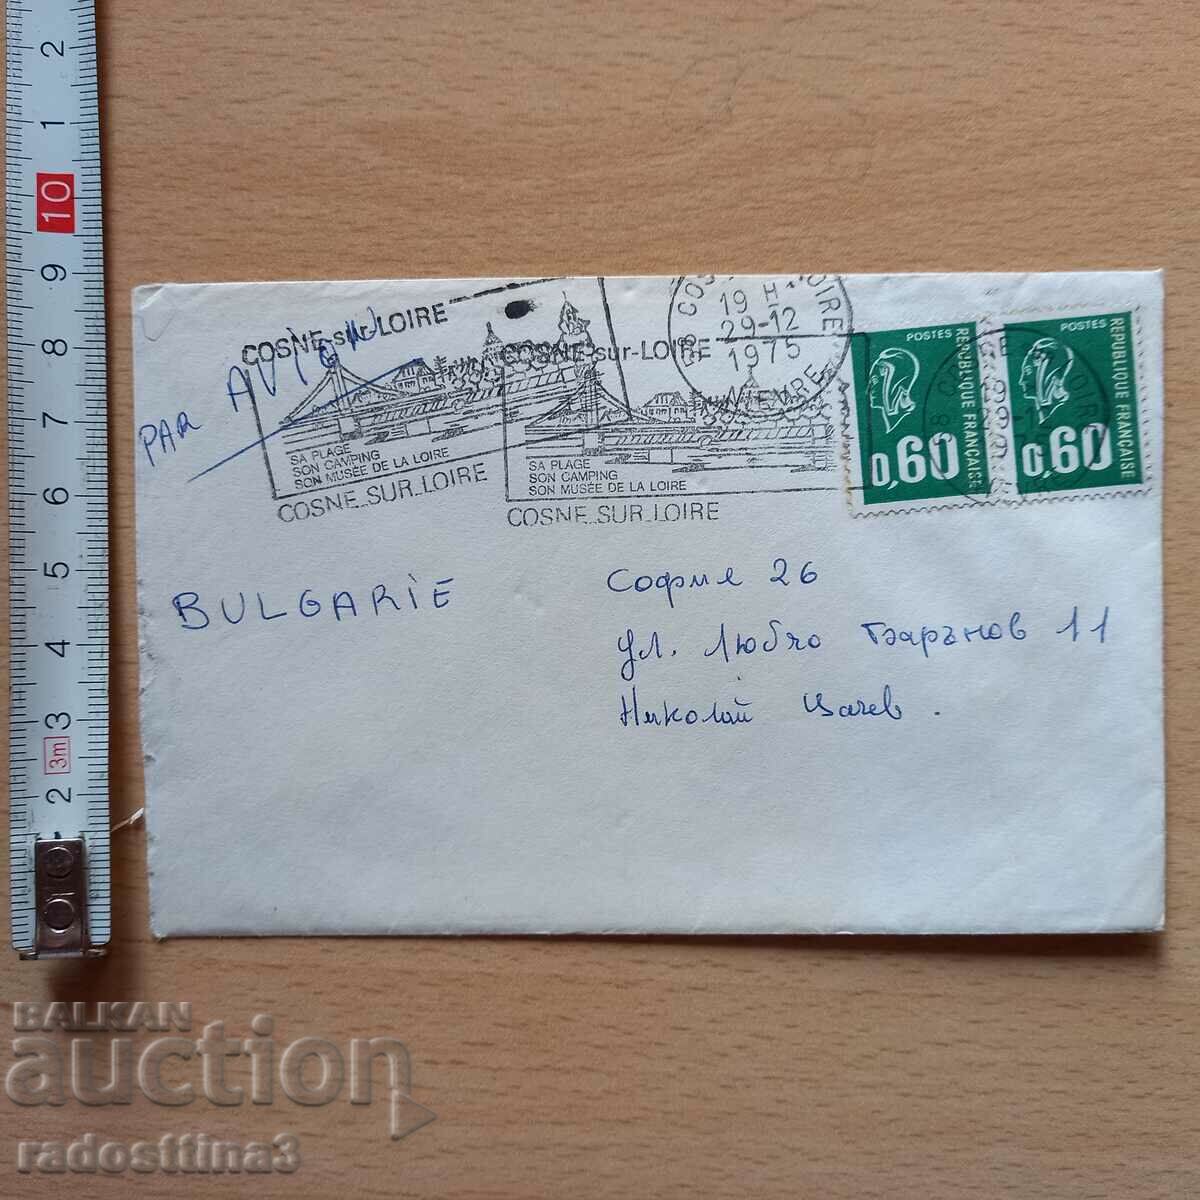 Postal envelope with France stamps